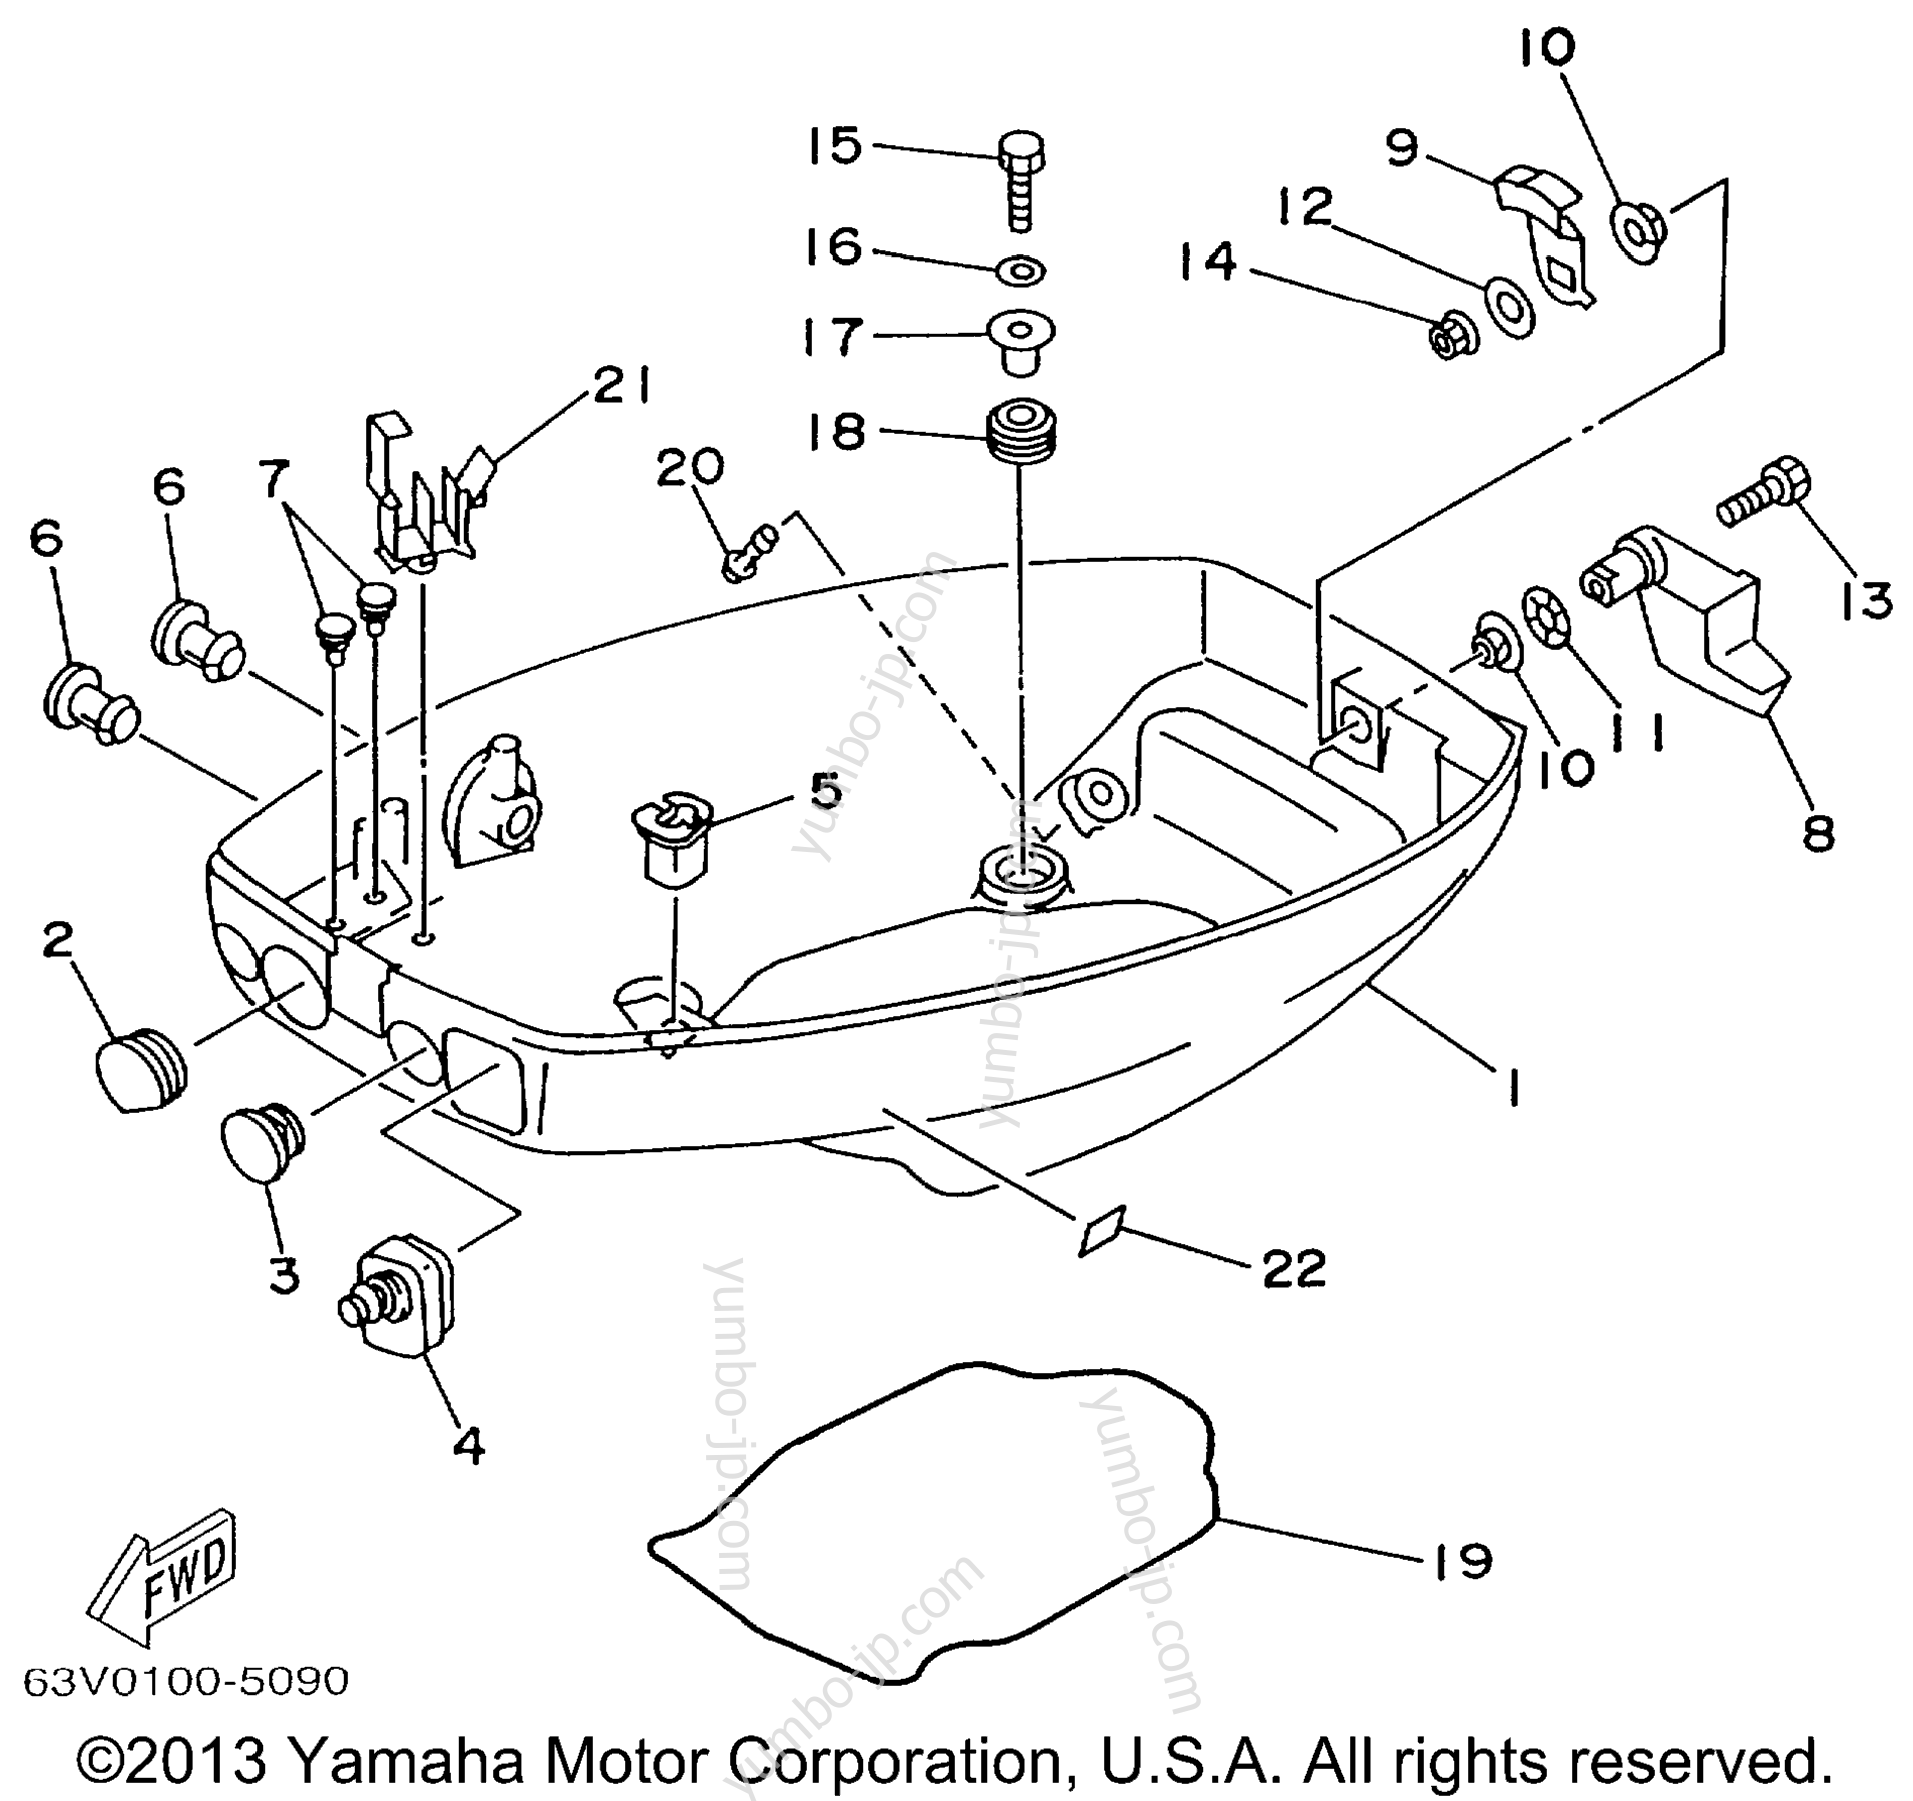 Bottom Cowling для лодочных моторов YAMAHA 9.9MSHX 1999 г.